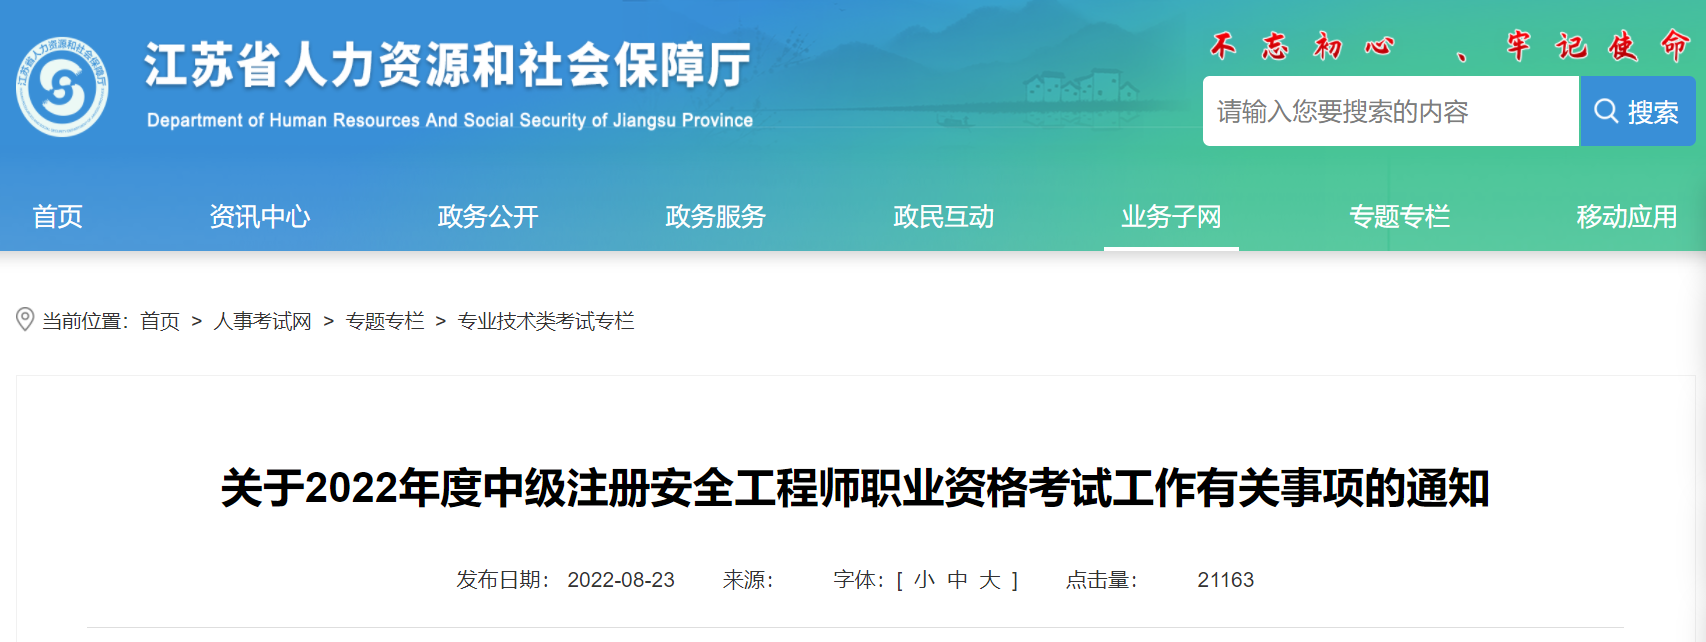 2019年江苏中级注册安全工程师考试报名审核工作通知